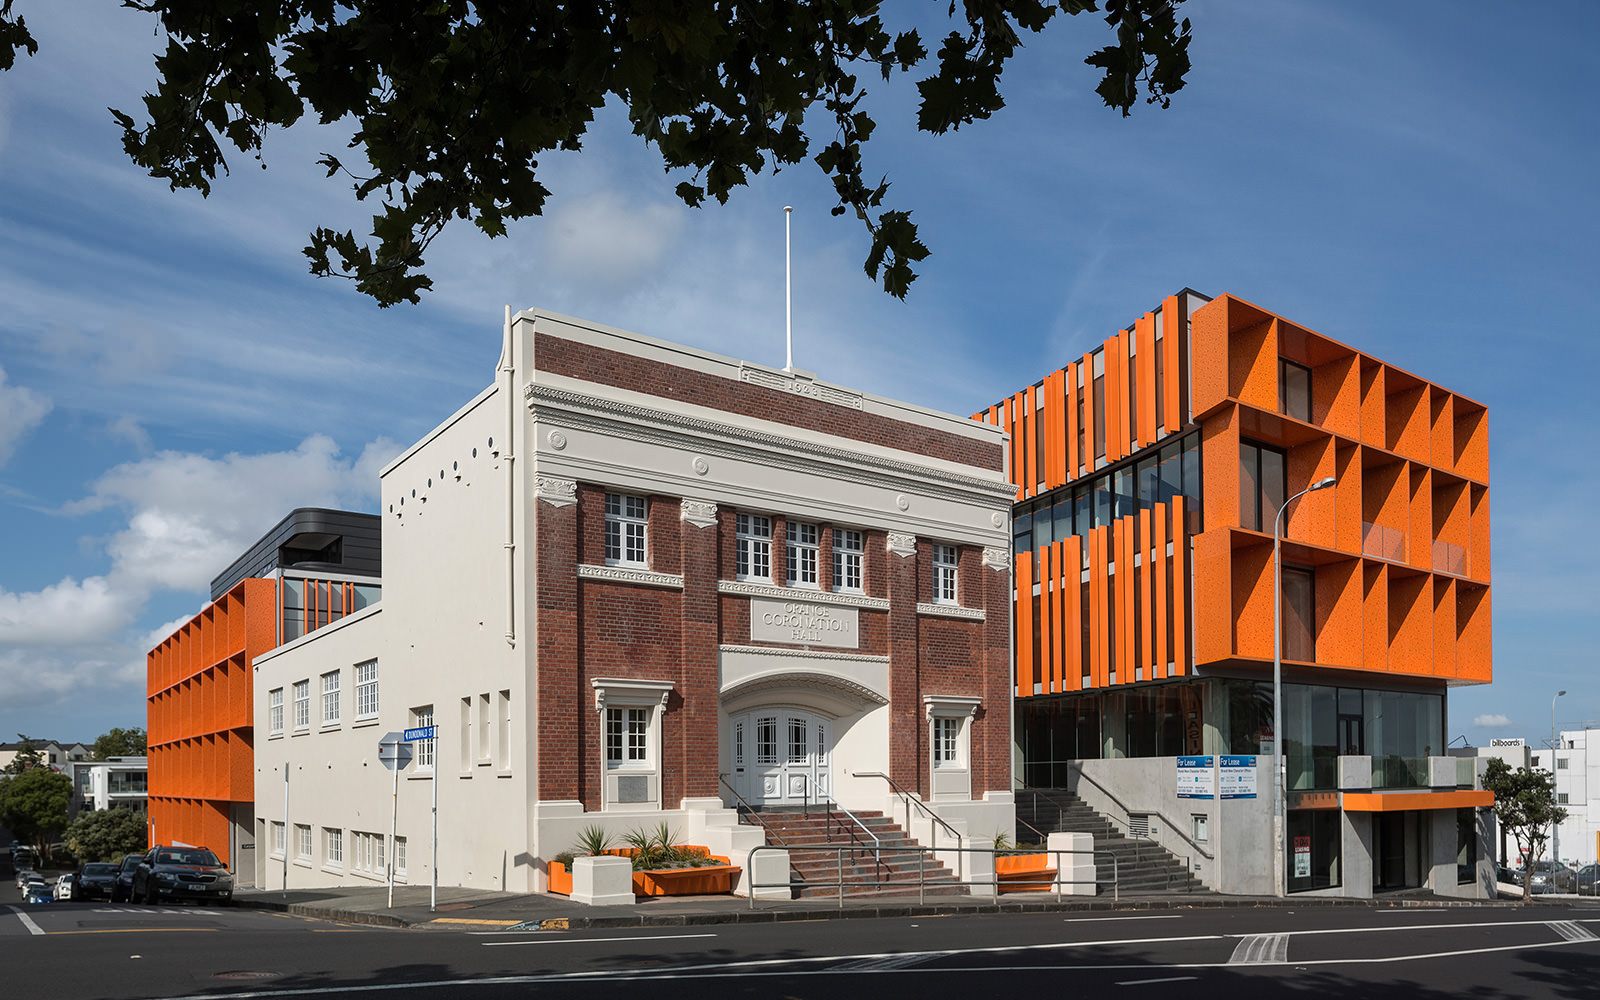 Heritage architecture orange curving building